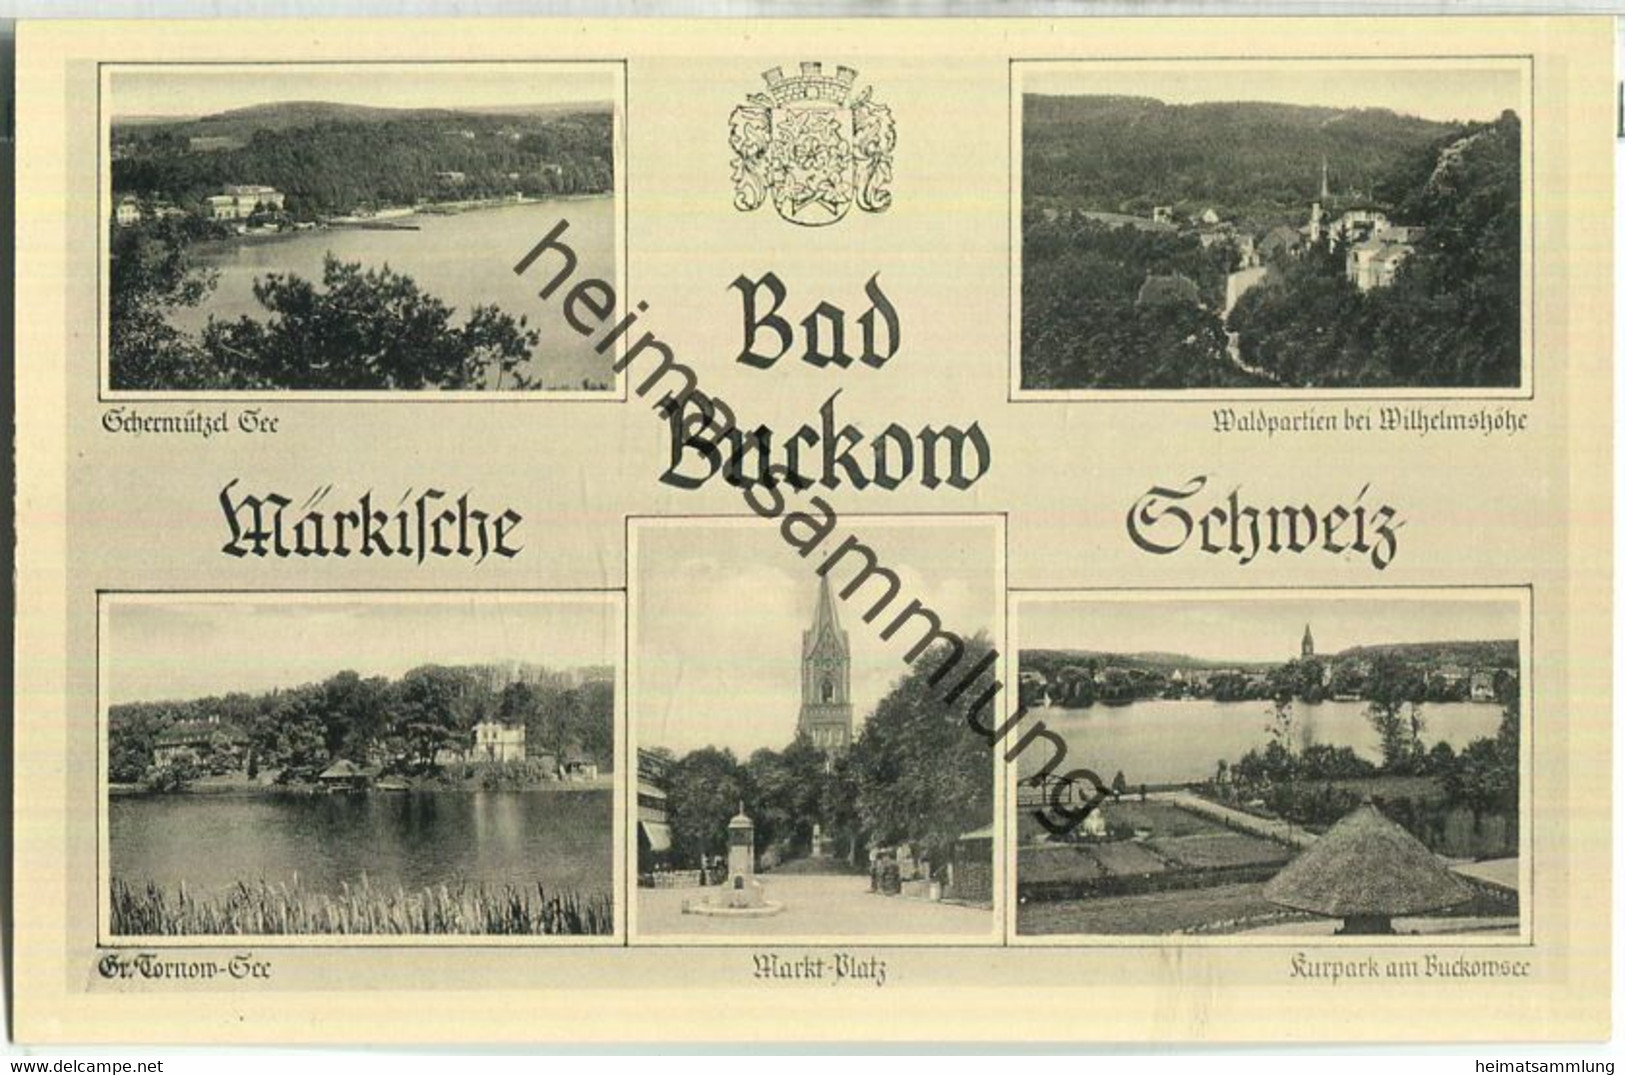 Bad Buckow - Foto-Ansichtskarte - Verlag W. Meyerheim Berlin 30er Jahre - Buckow